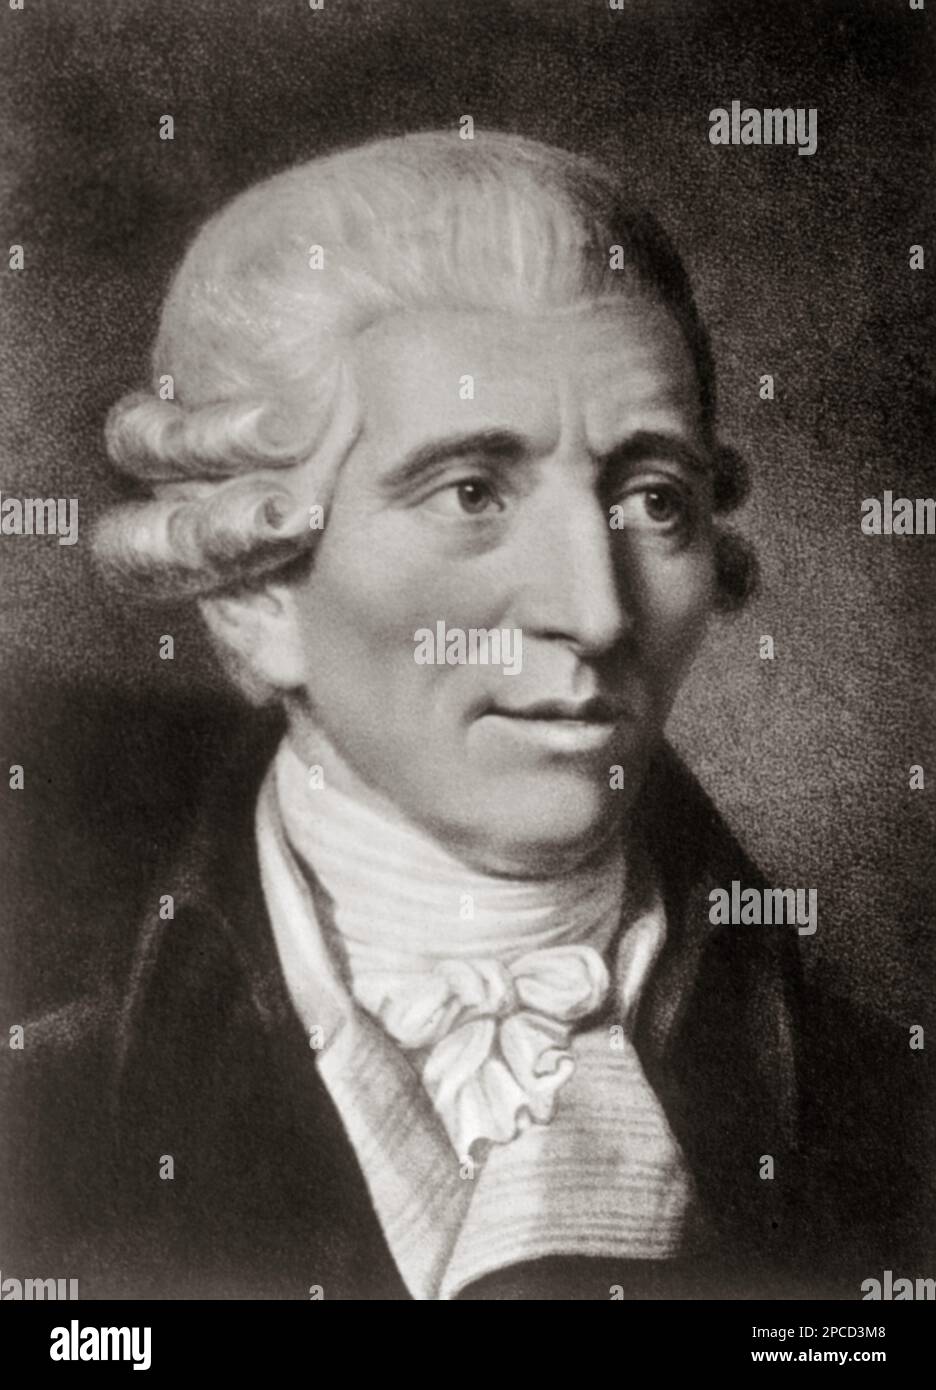 Il celebre compositore di musica barocca austriaco Franz JOSEPH HAYDN ( 1732 - 1809 ).Cittadino austriaco, Haydn ha trascorso gran parte della sua carriera come musicista di corte per la ricca famiglia ungherese Esterhezy nella sua remota proprietà. - MUSICA CLASSICA - CLASSICA - JOSEF - COMPOSITORE - MUSICA - ritratto - ritratto - parrucca - parrucca - jabot - BAROCCO - BAROCCA --- ARCHIVIO GBB Foto Stock